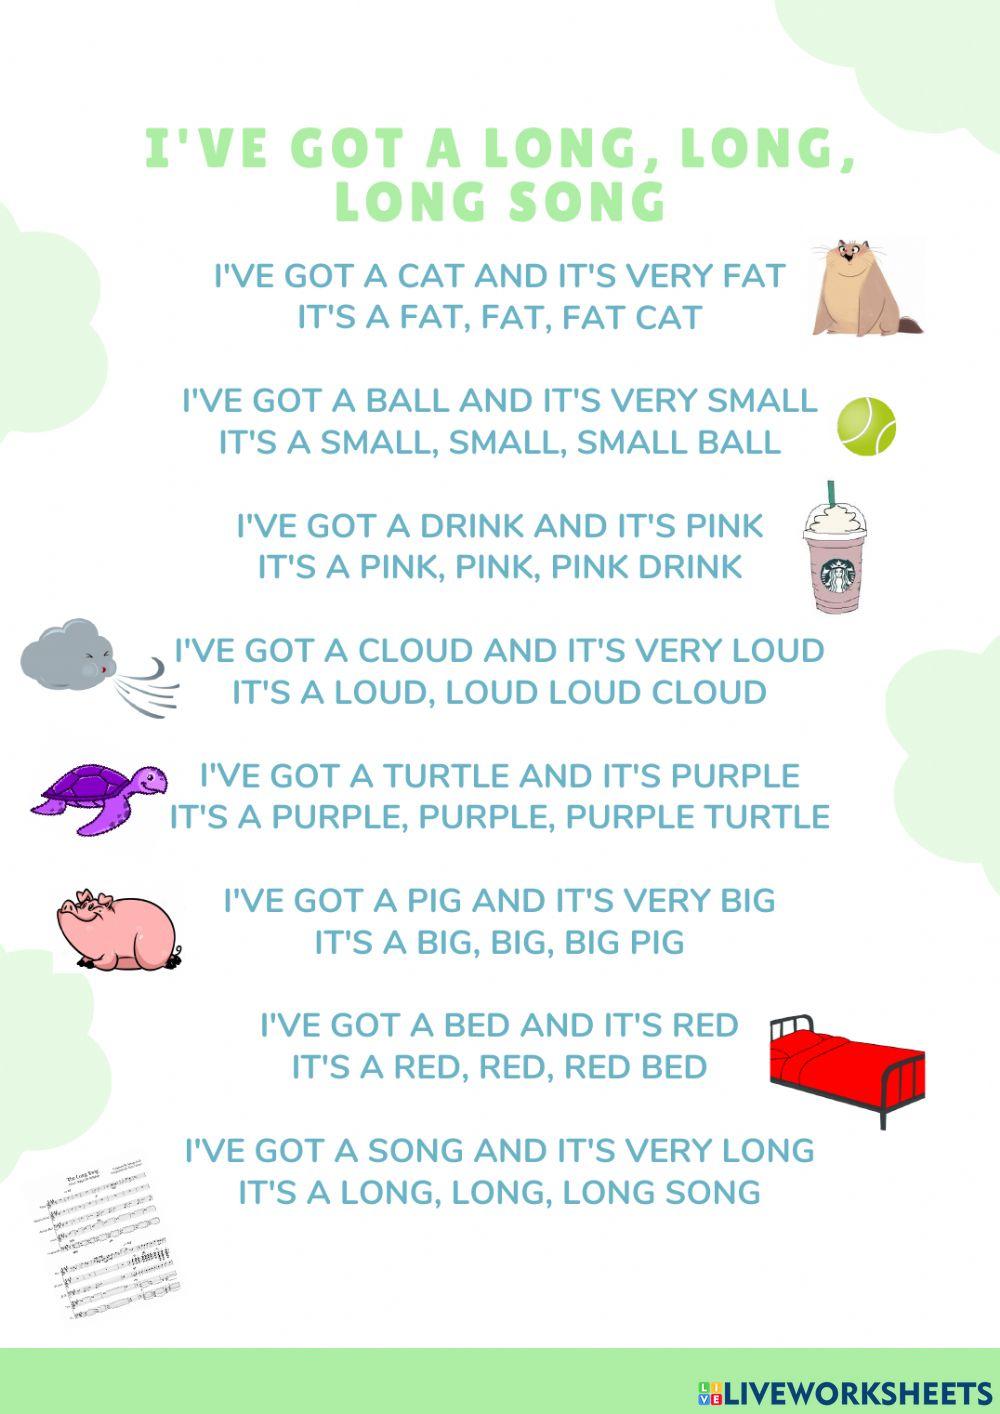 I've got a song poem